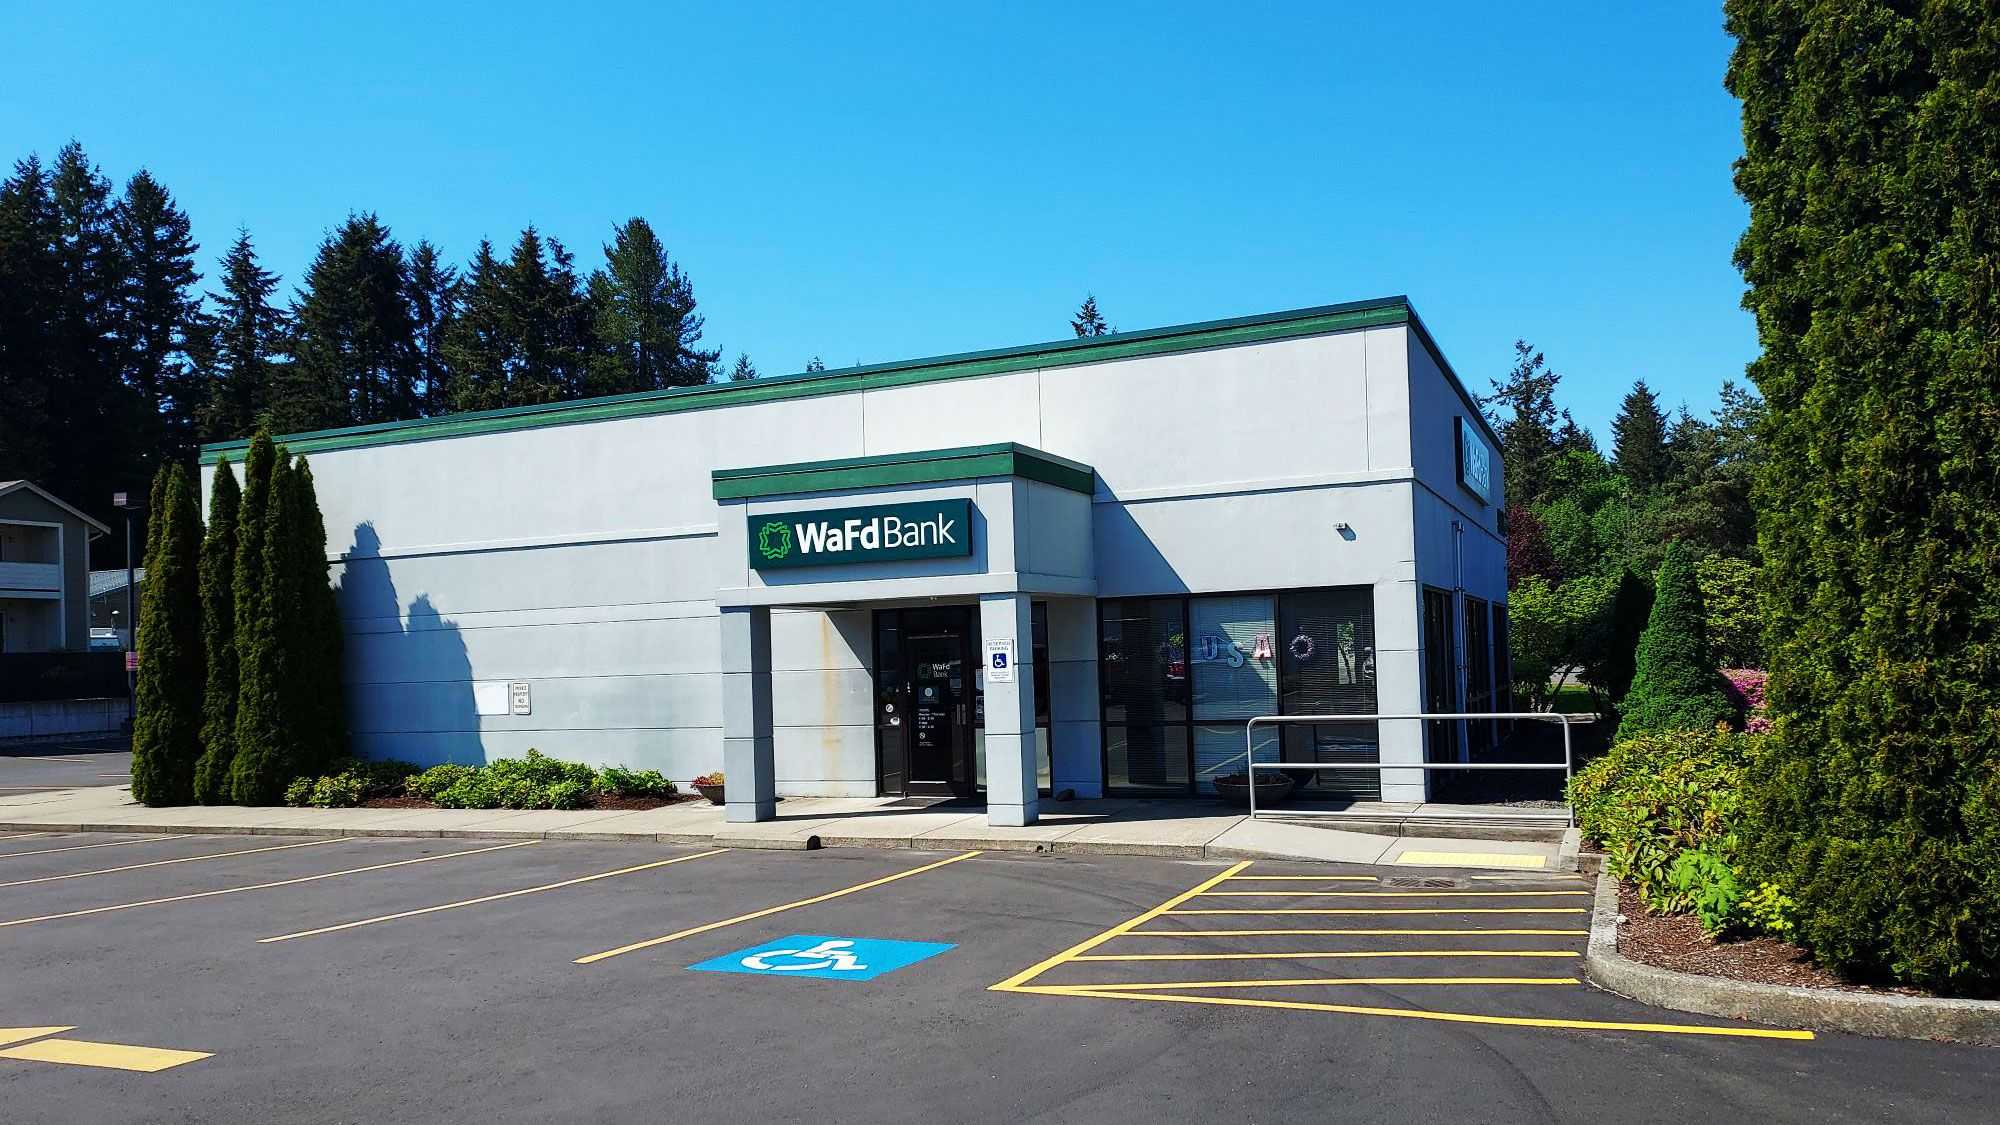 WaFd Bank in Bremerton, Washington #1010 - Washington Federal.